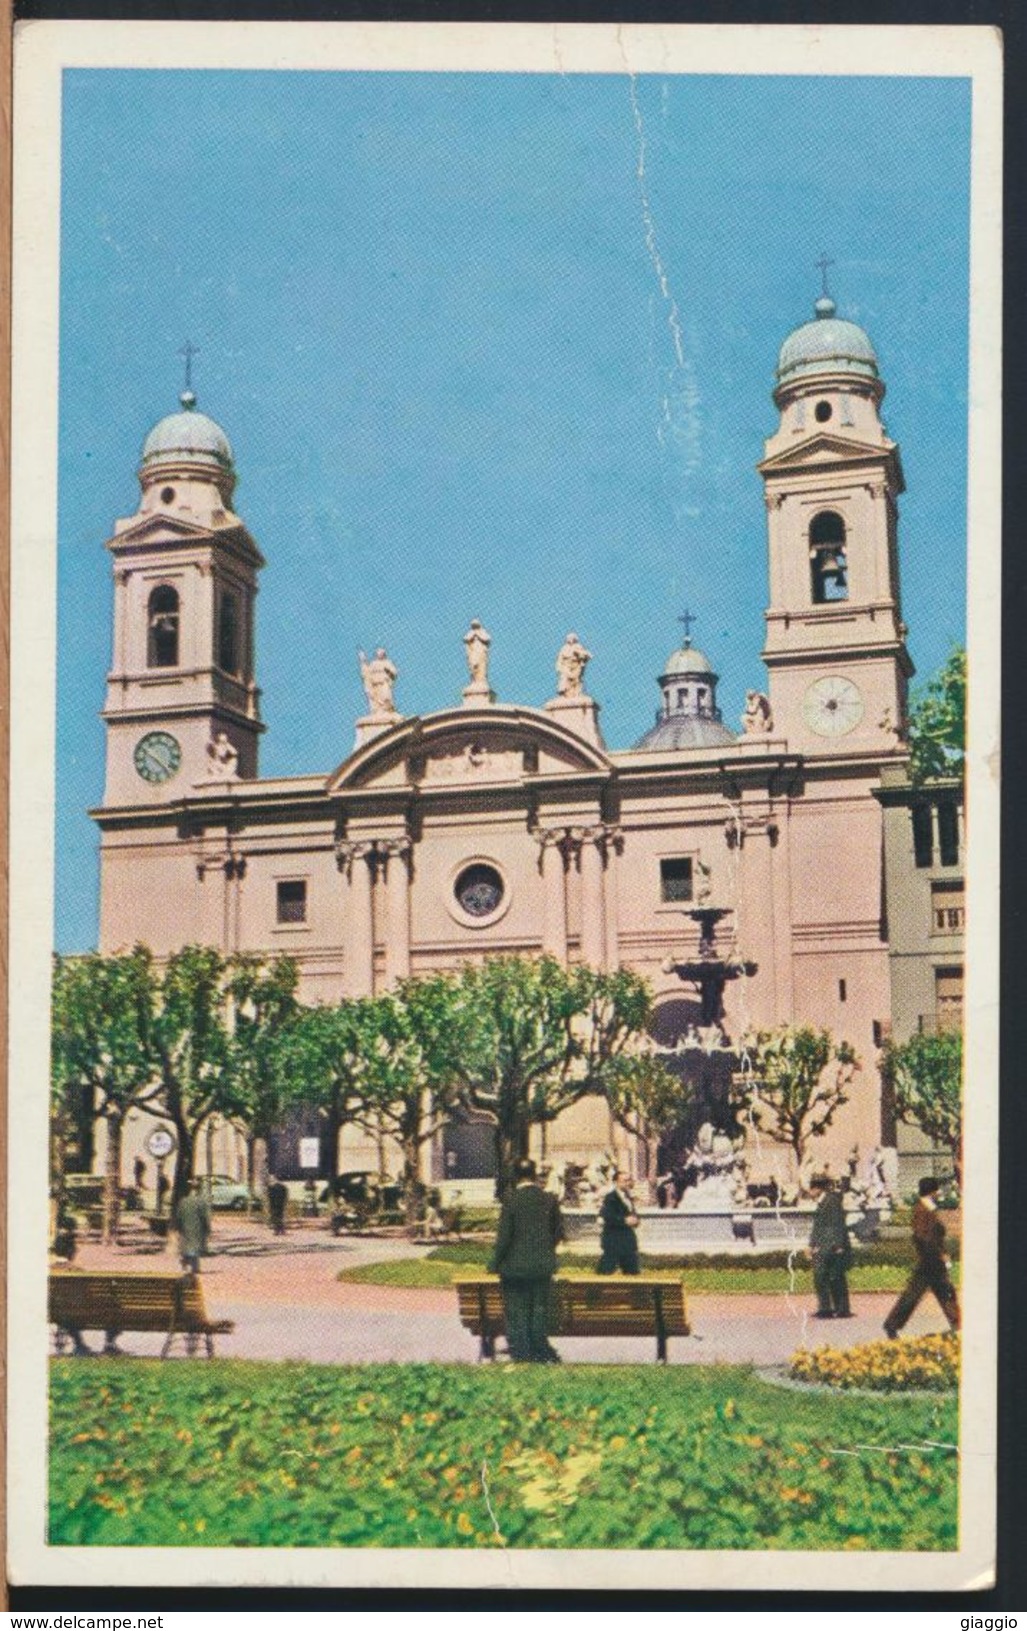 °°° 8202 - URUGUAY - MONTEVIDEO - LA CATEDRAL - PLAZA CONSTITUCION - 1955 °°° - Uruguay